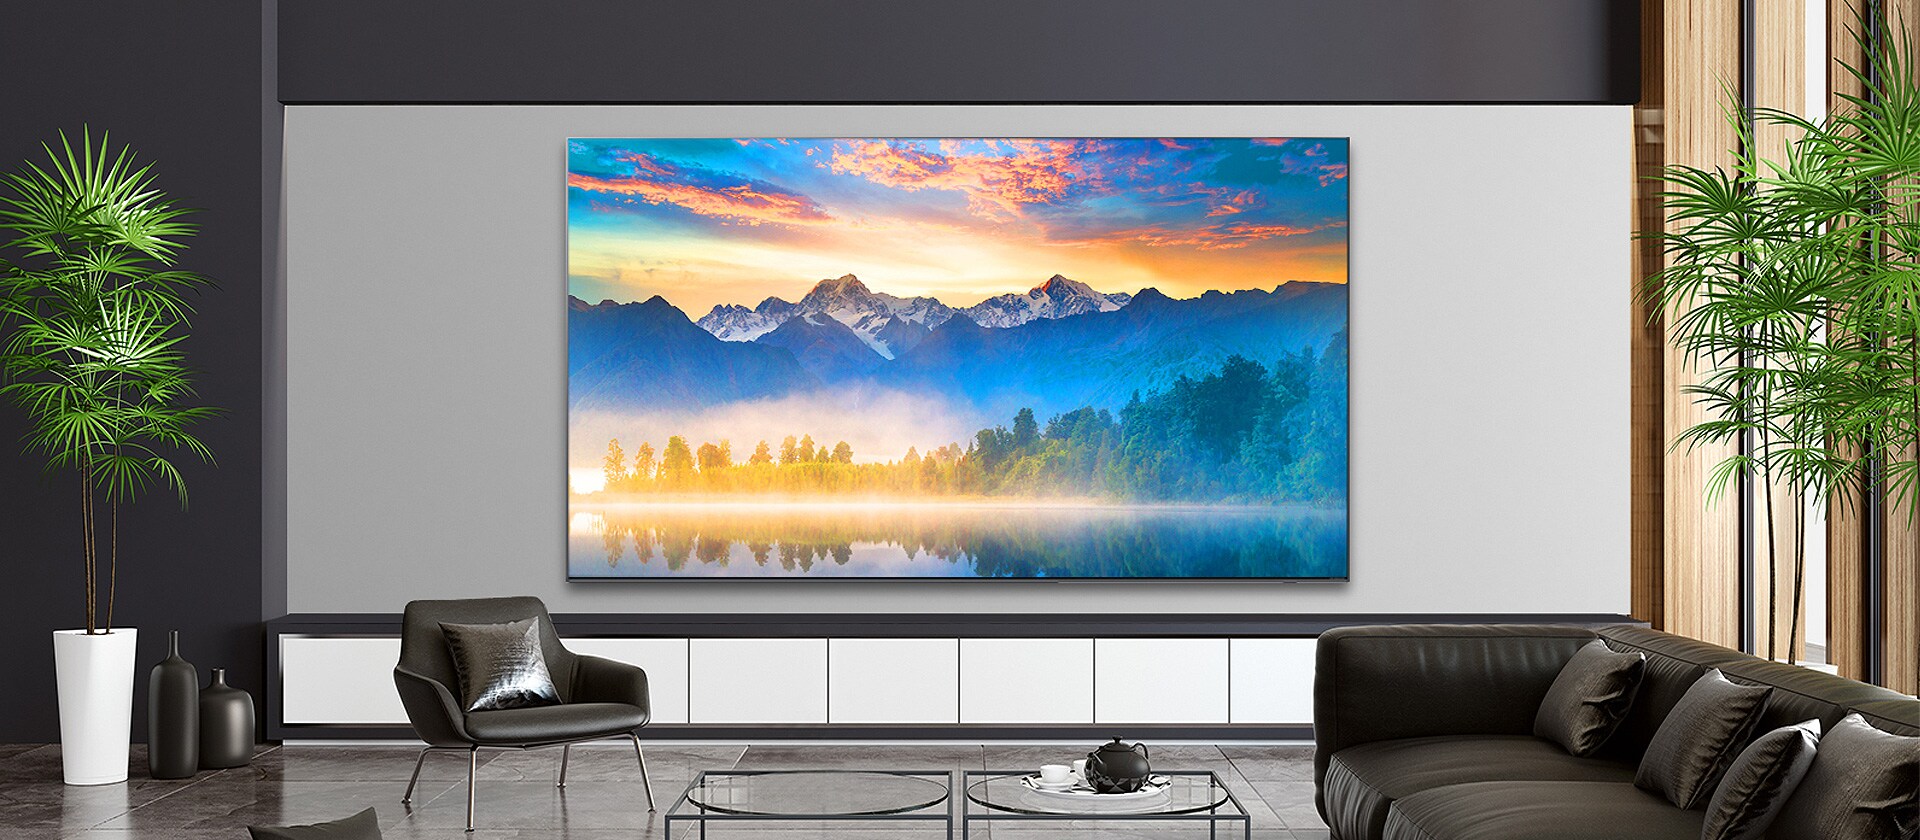 Dnevna soba sa ekranom televizora montiranog na zid prikazuje scenu prirode.